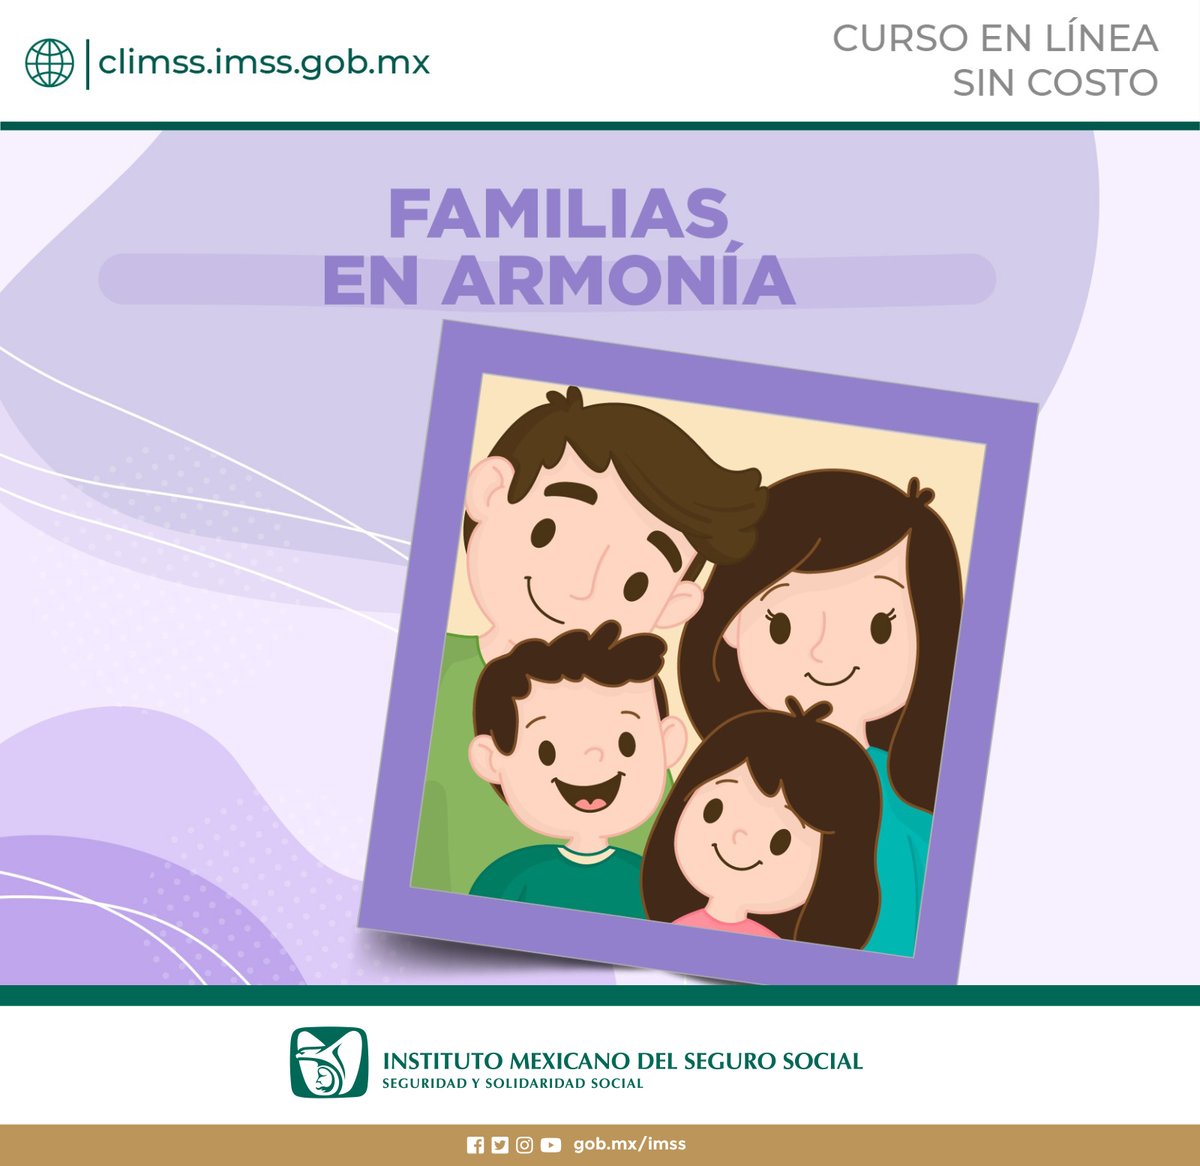 Inscríbete al curso en línea 'Familias en armonía' que es gratuito en nuestra plataforma #CLIMSS. climss.imss.gob.mx